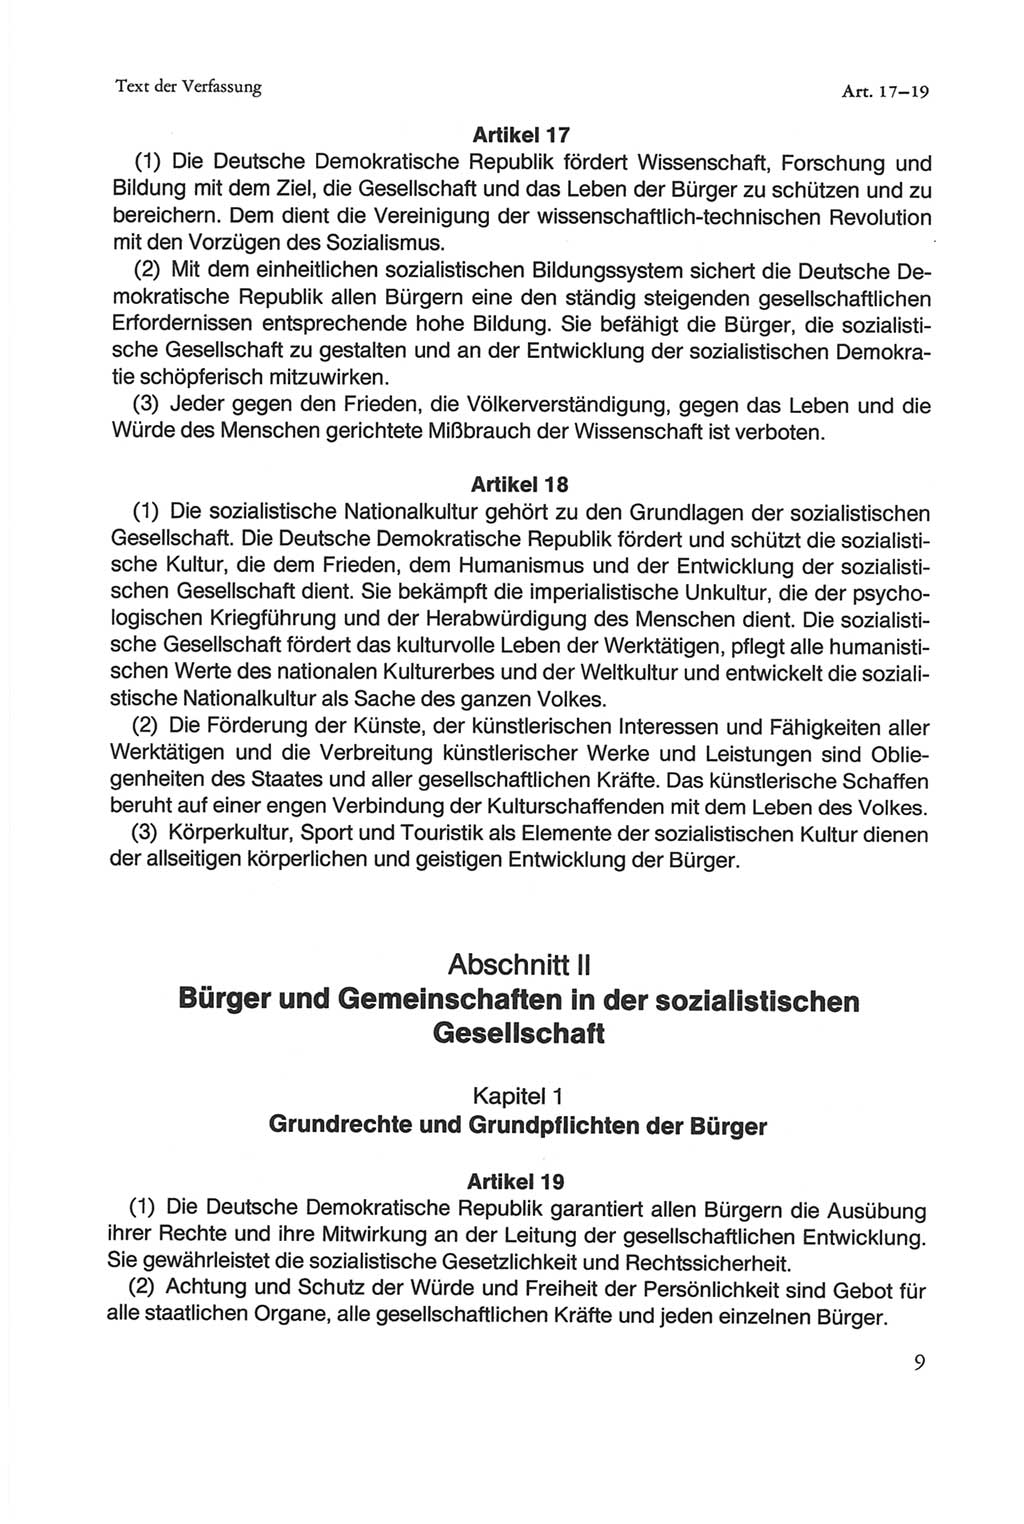 Die sozialistische Verfassung der Deutschen Demokratischen Republik (DDR), Kommentar 1982, Seite 9 (Soz. Verf. DDR Komm. 1982, S. 9)